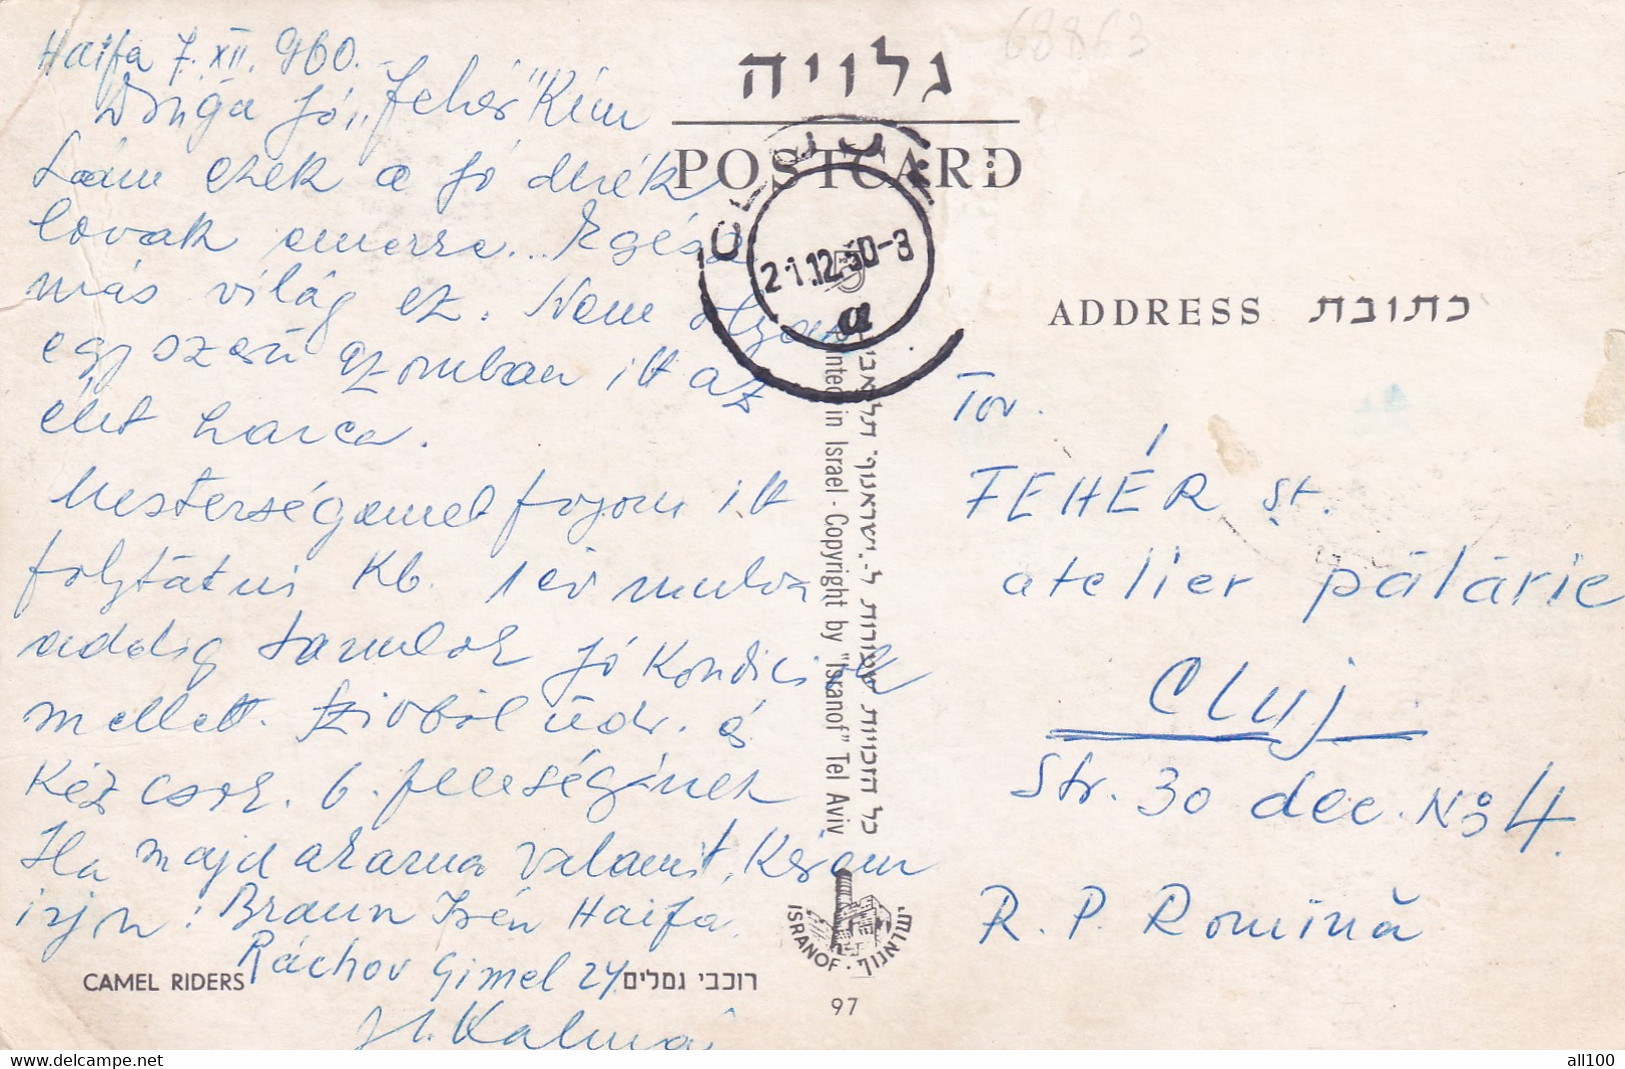 A16809 - CAMEL RIDERS POSTCARD 1950 PRINTED IN ISRAEL - Palestine